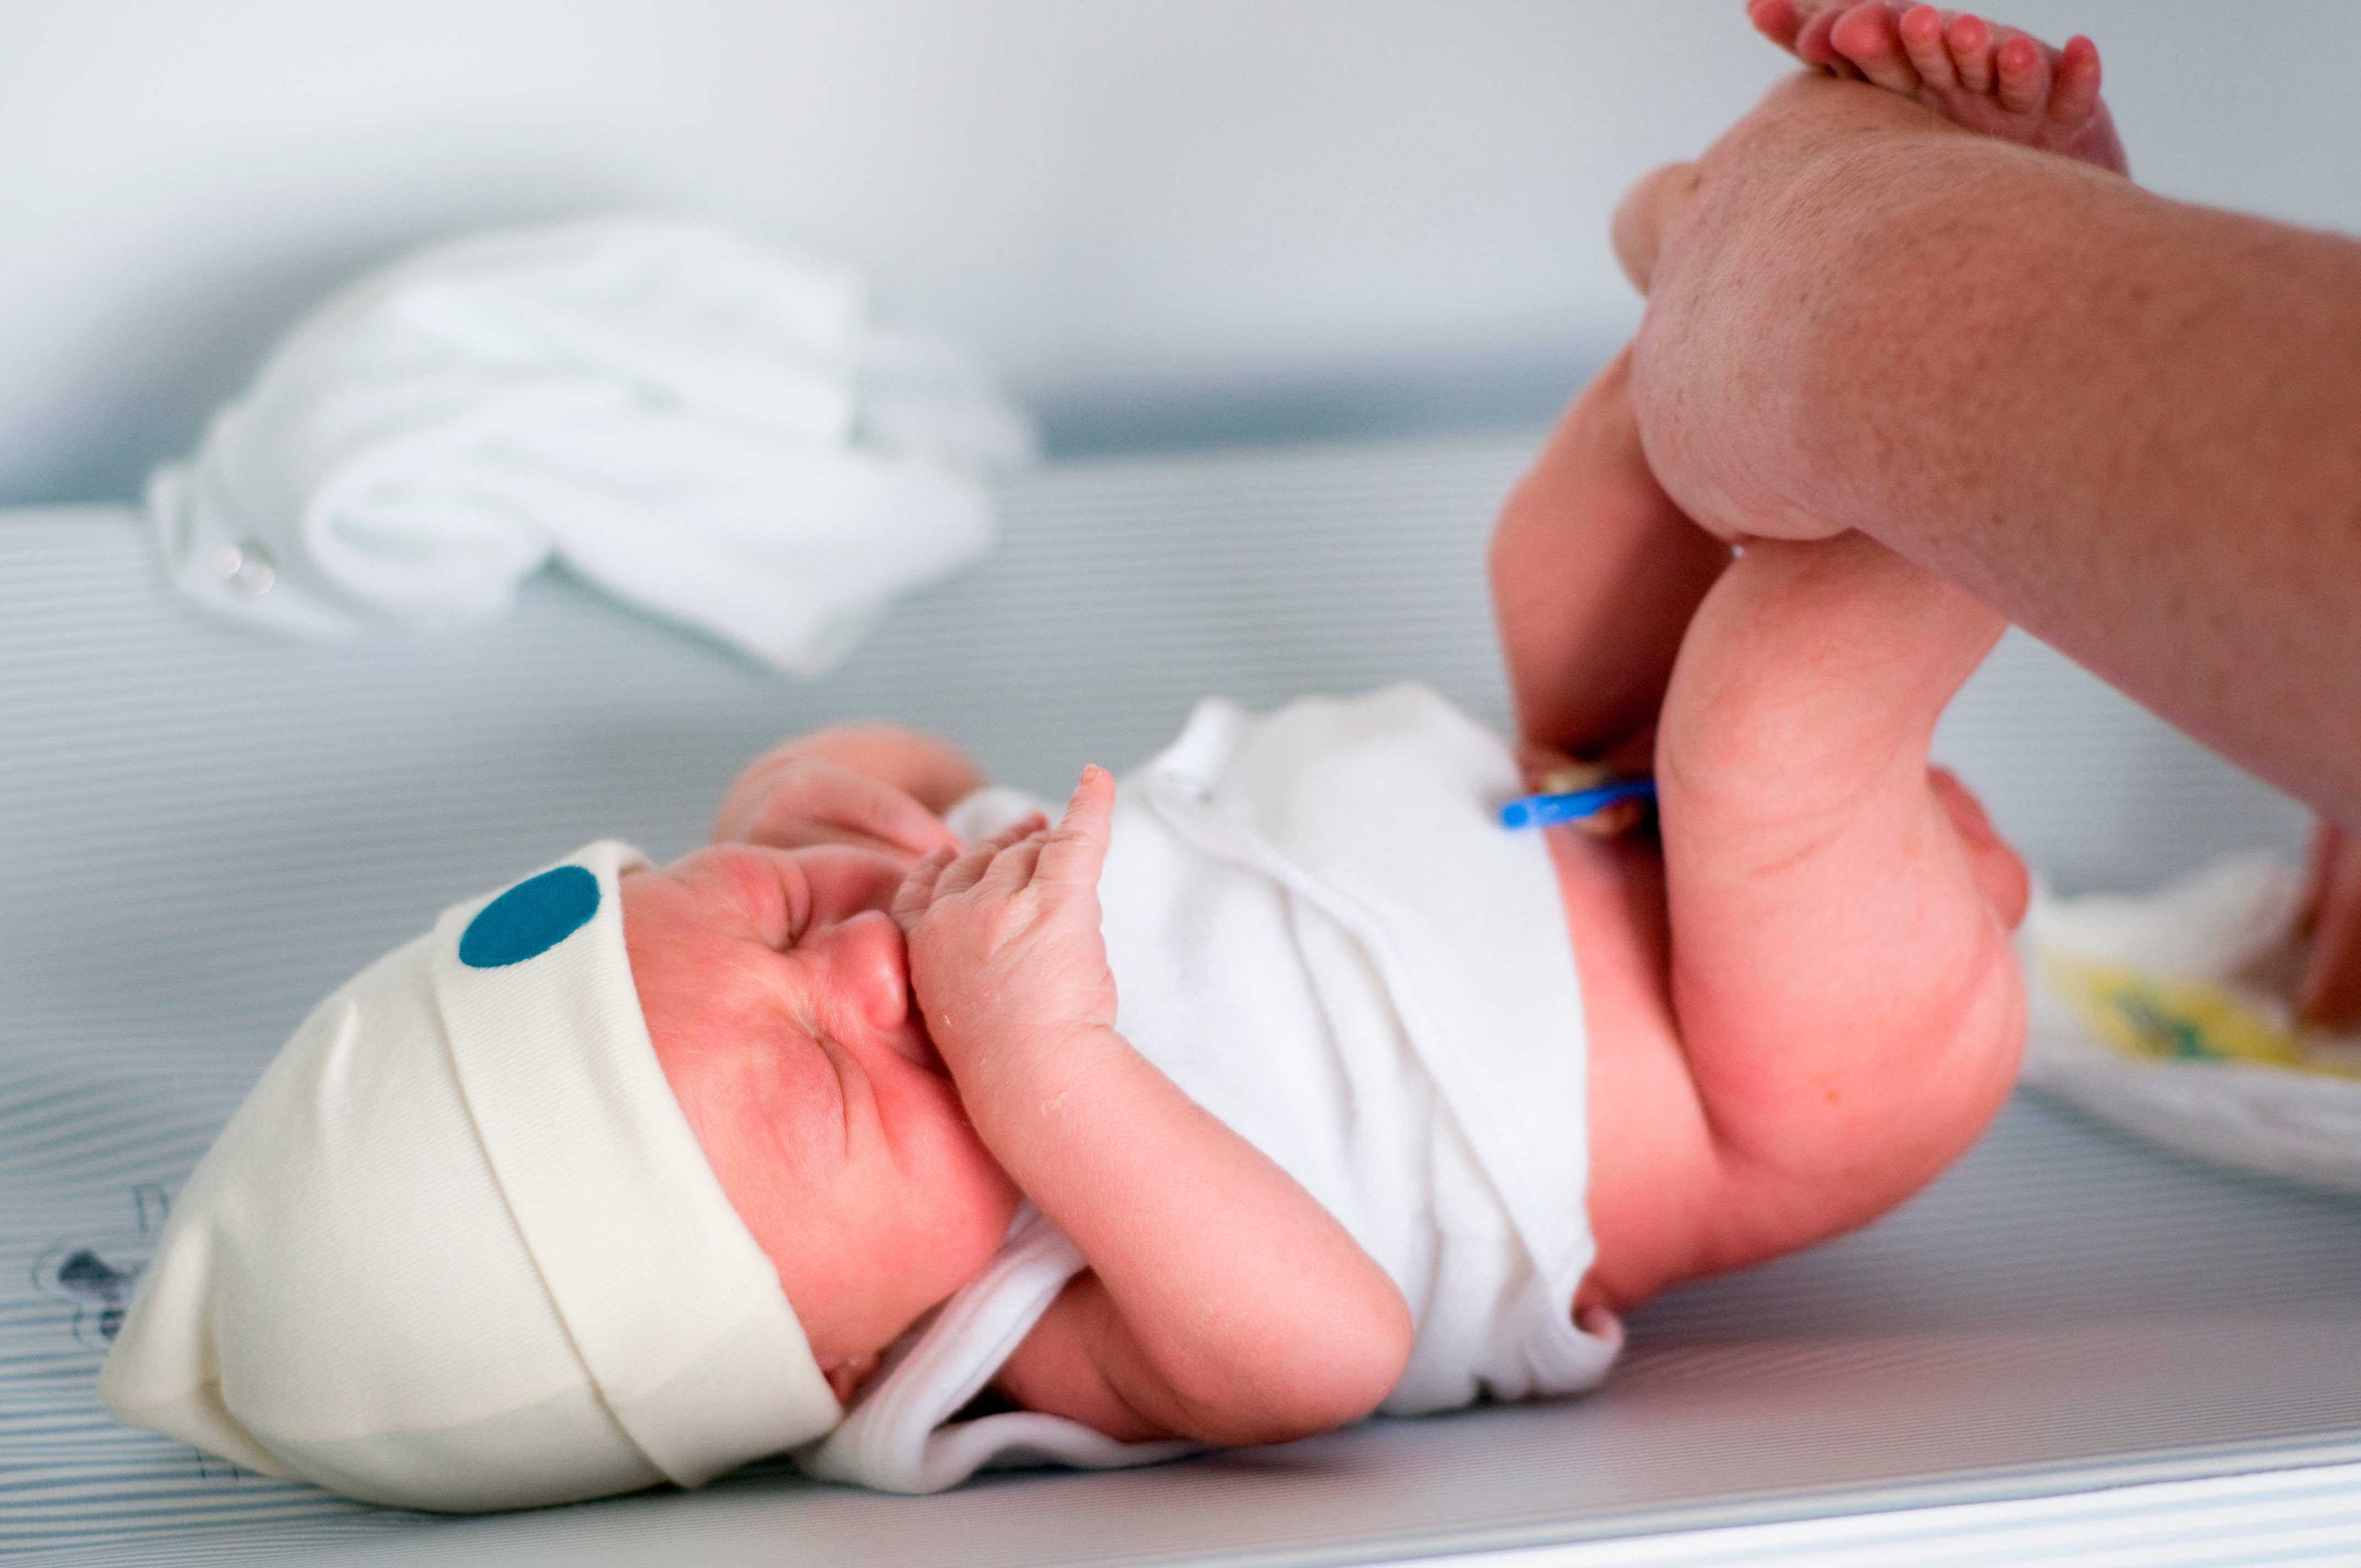 Как держать на руках новорожденного, чтобы не навредить хрупкому телу